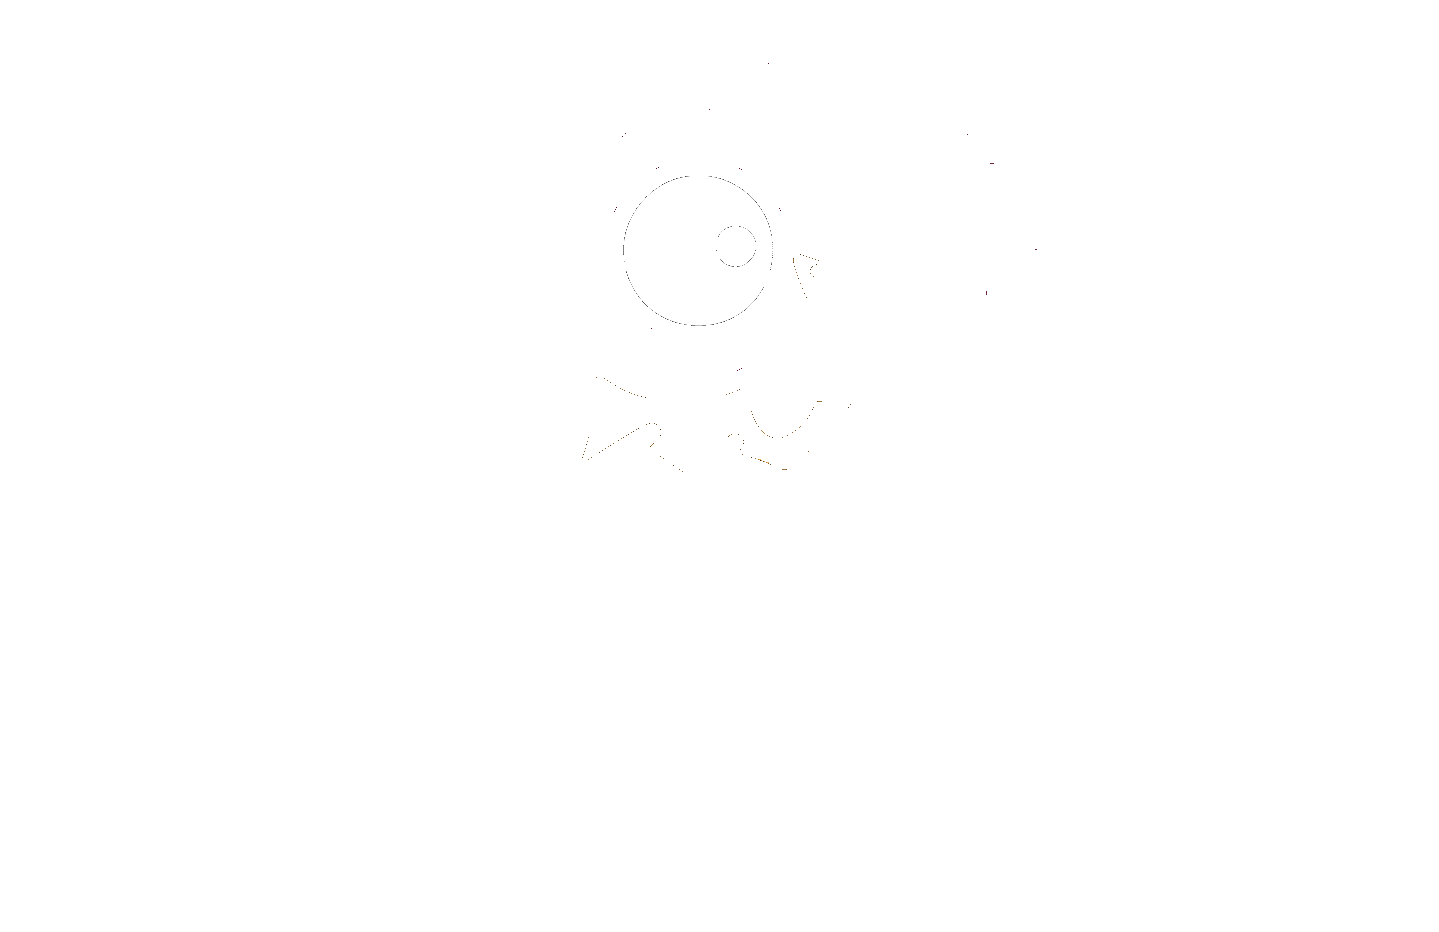 chkn_media